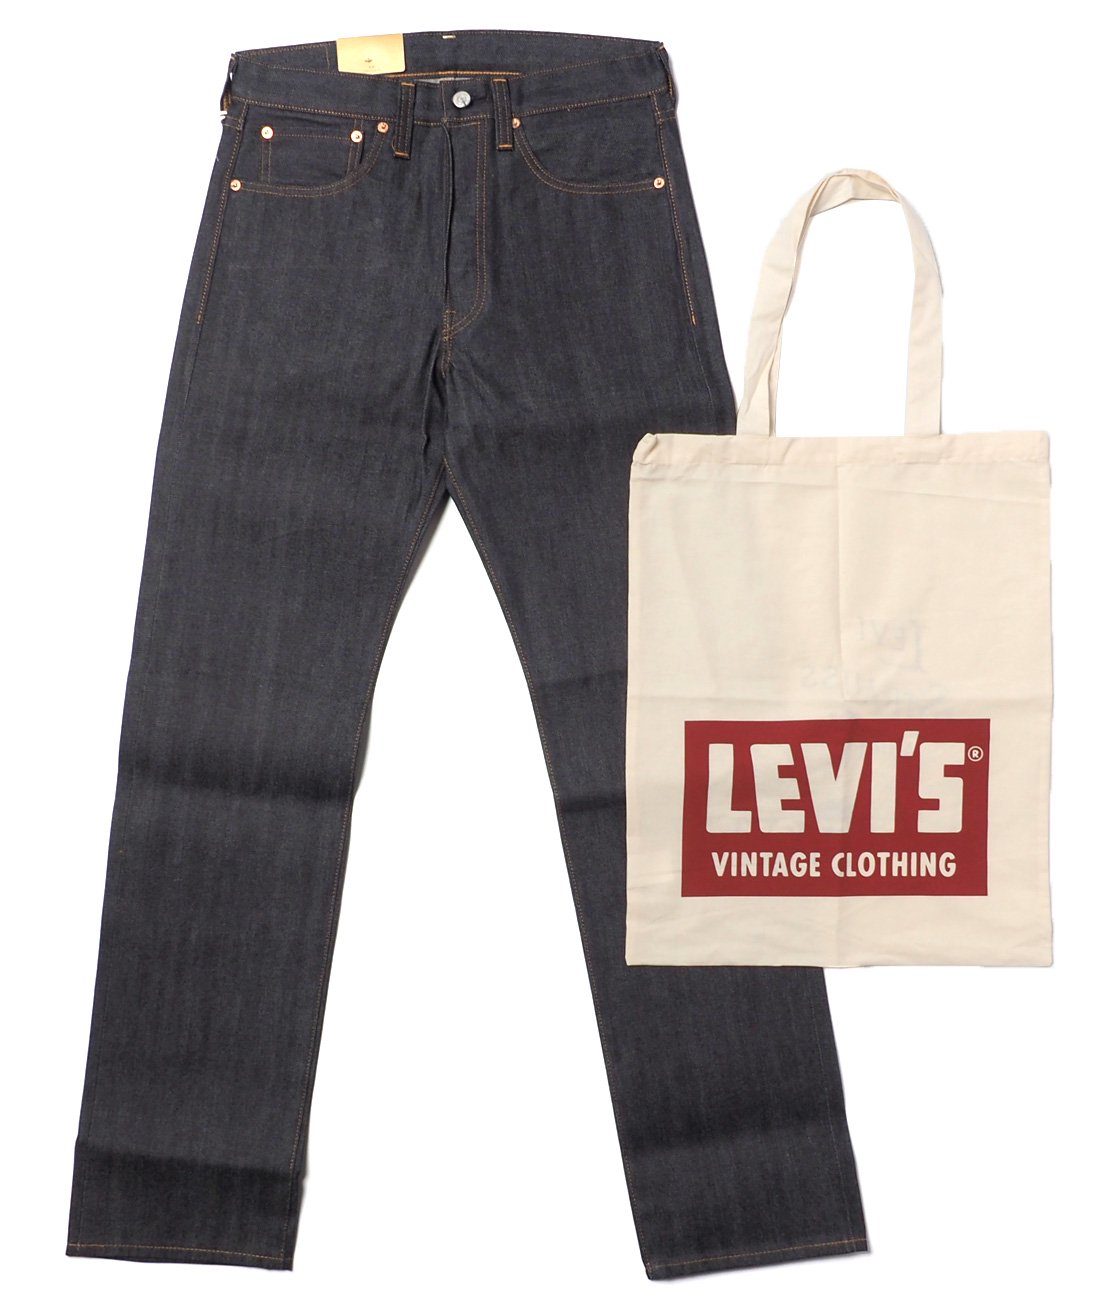 【LEVI'S VINTAGE CLOTHING】1947 501XX JEANS - RIGID ジーンズ ORGANIC リジッド オーガニック  - HUNKY DORY | LEVI'S VINTAGE CLOTHING、JACKMAN、CHAMPIONなどのブランドを主に扱うセレクトショップ  ...